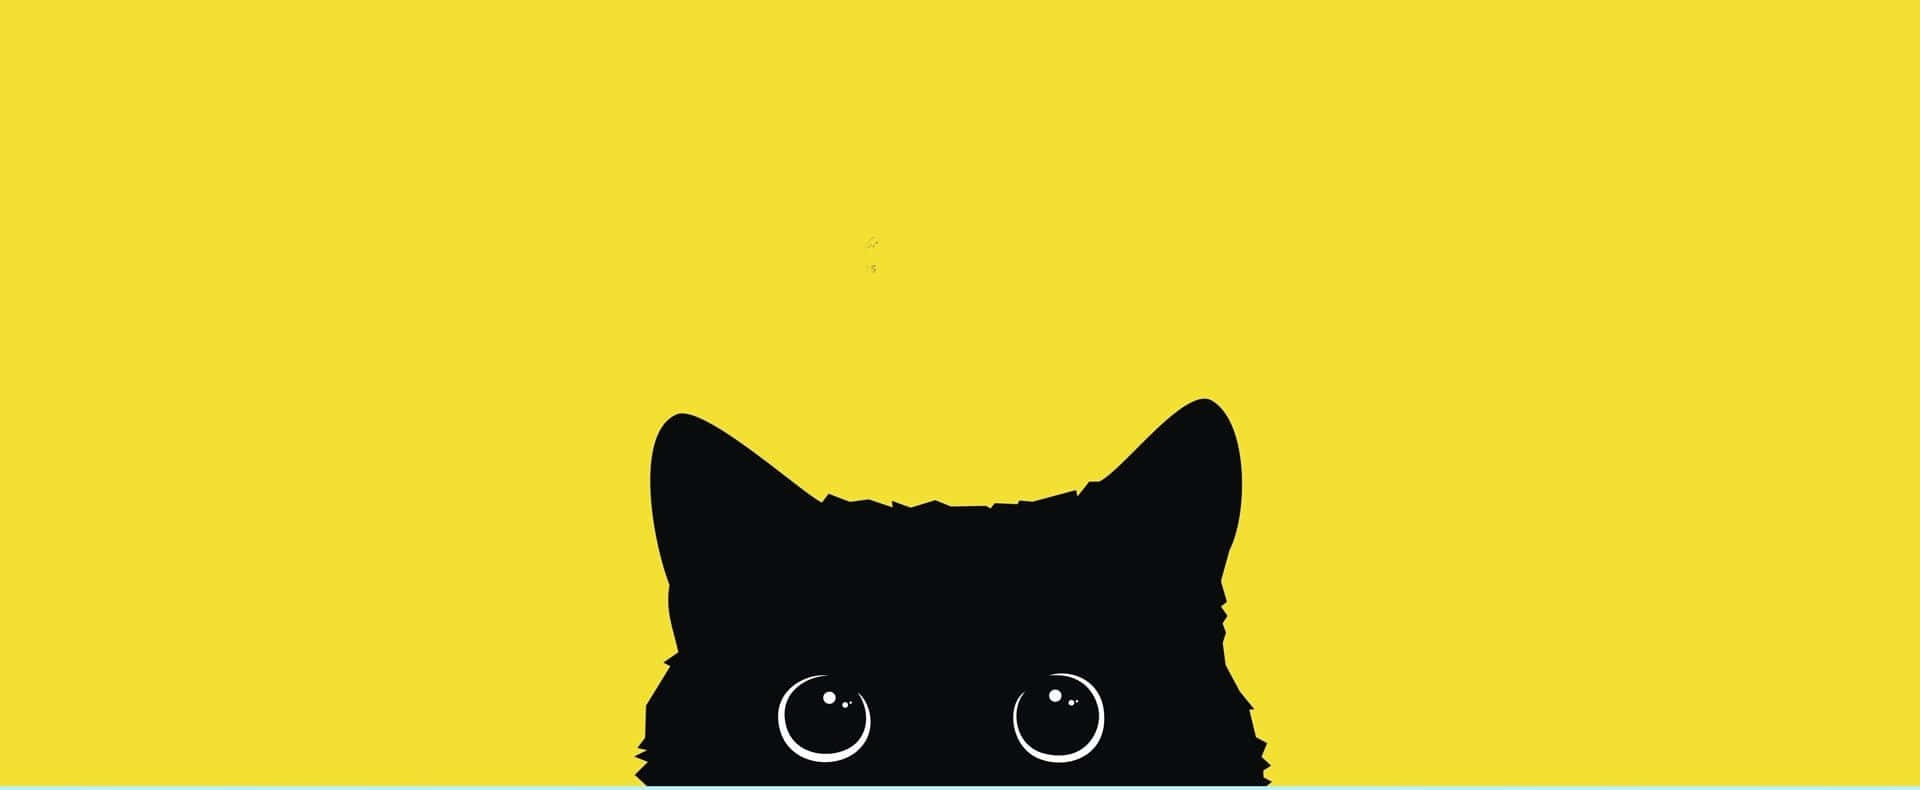 Ensvart Katt Med Ögon På En Gul Bakgrund Wallpaper